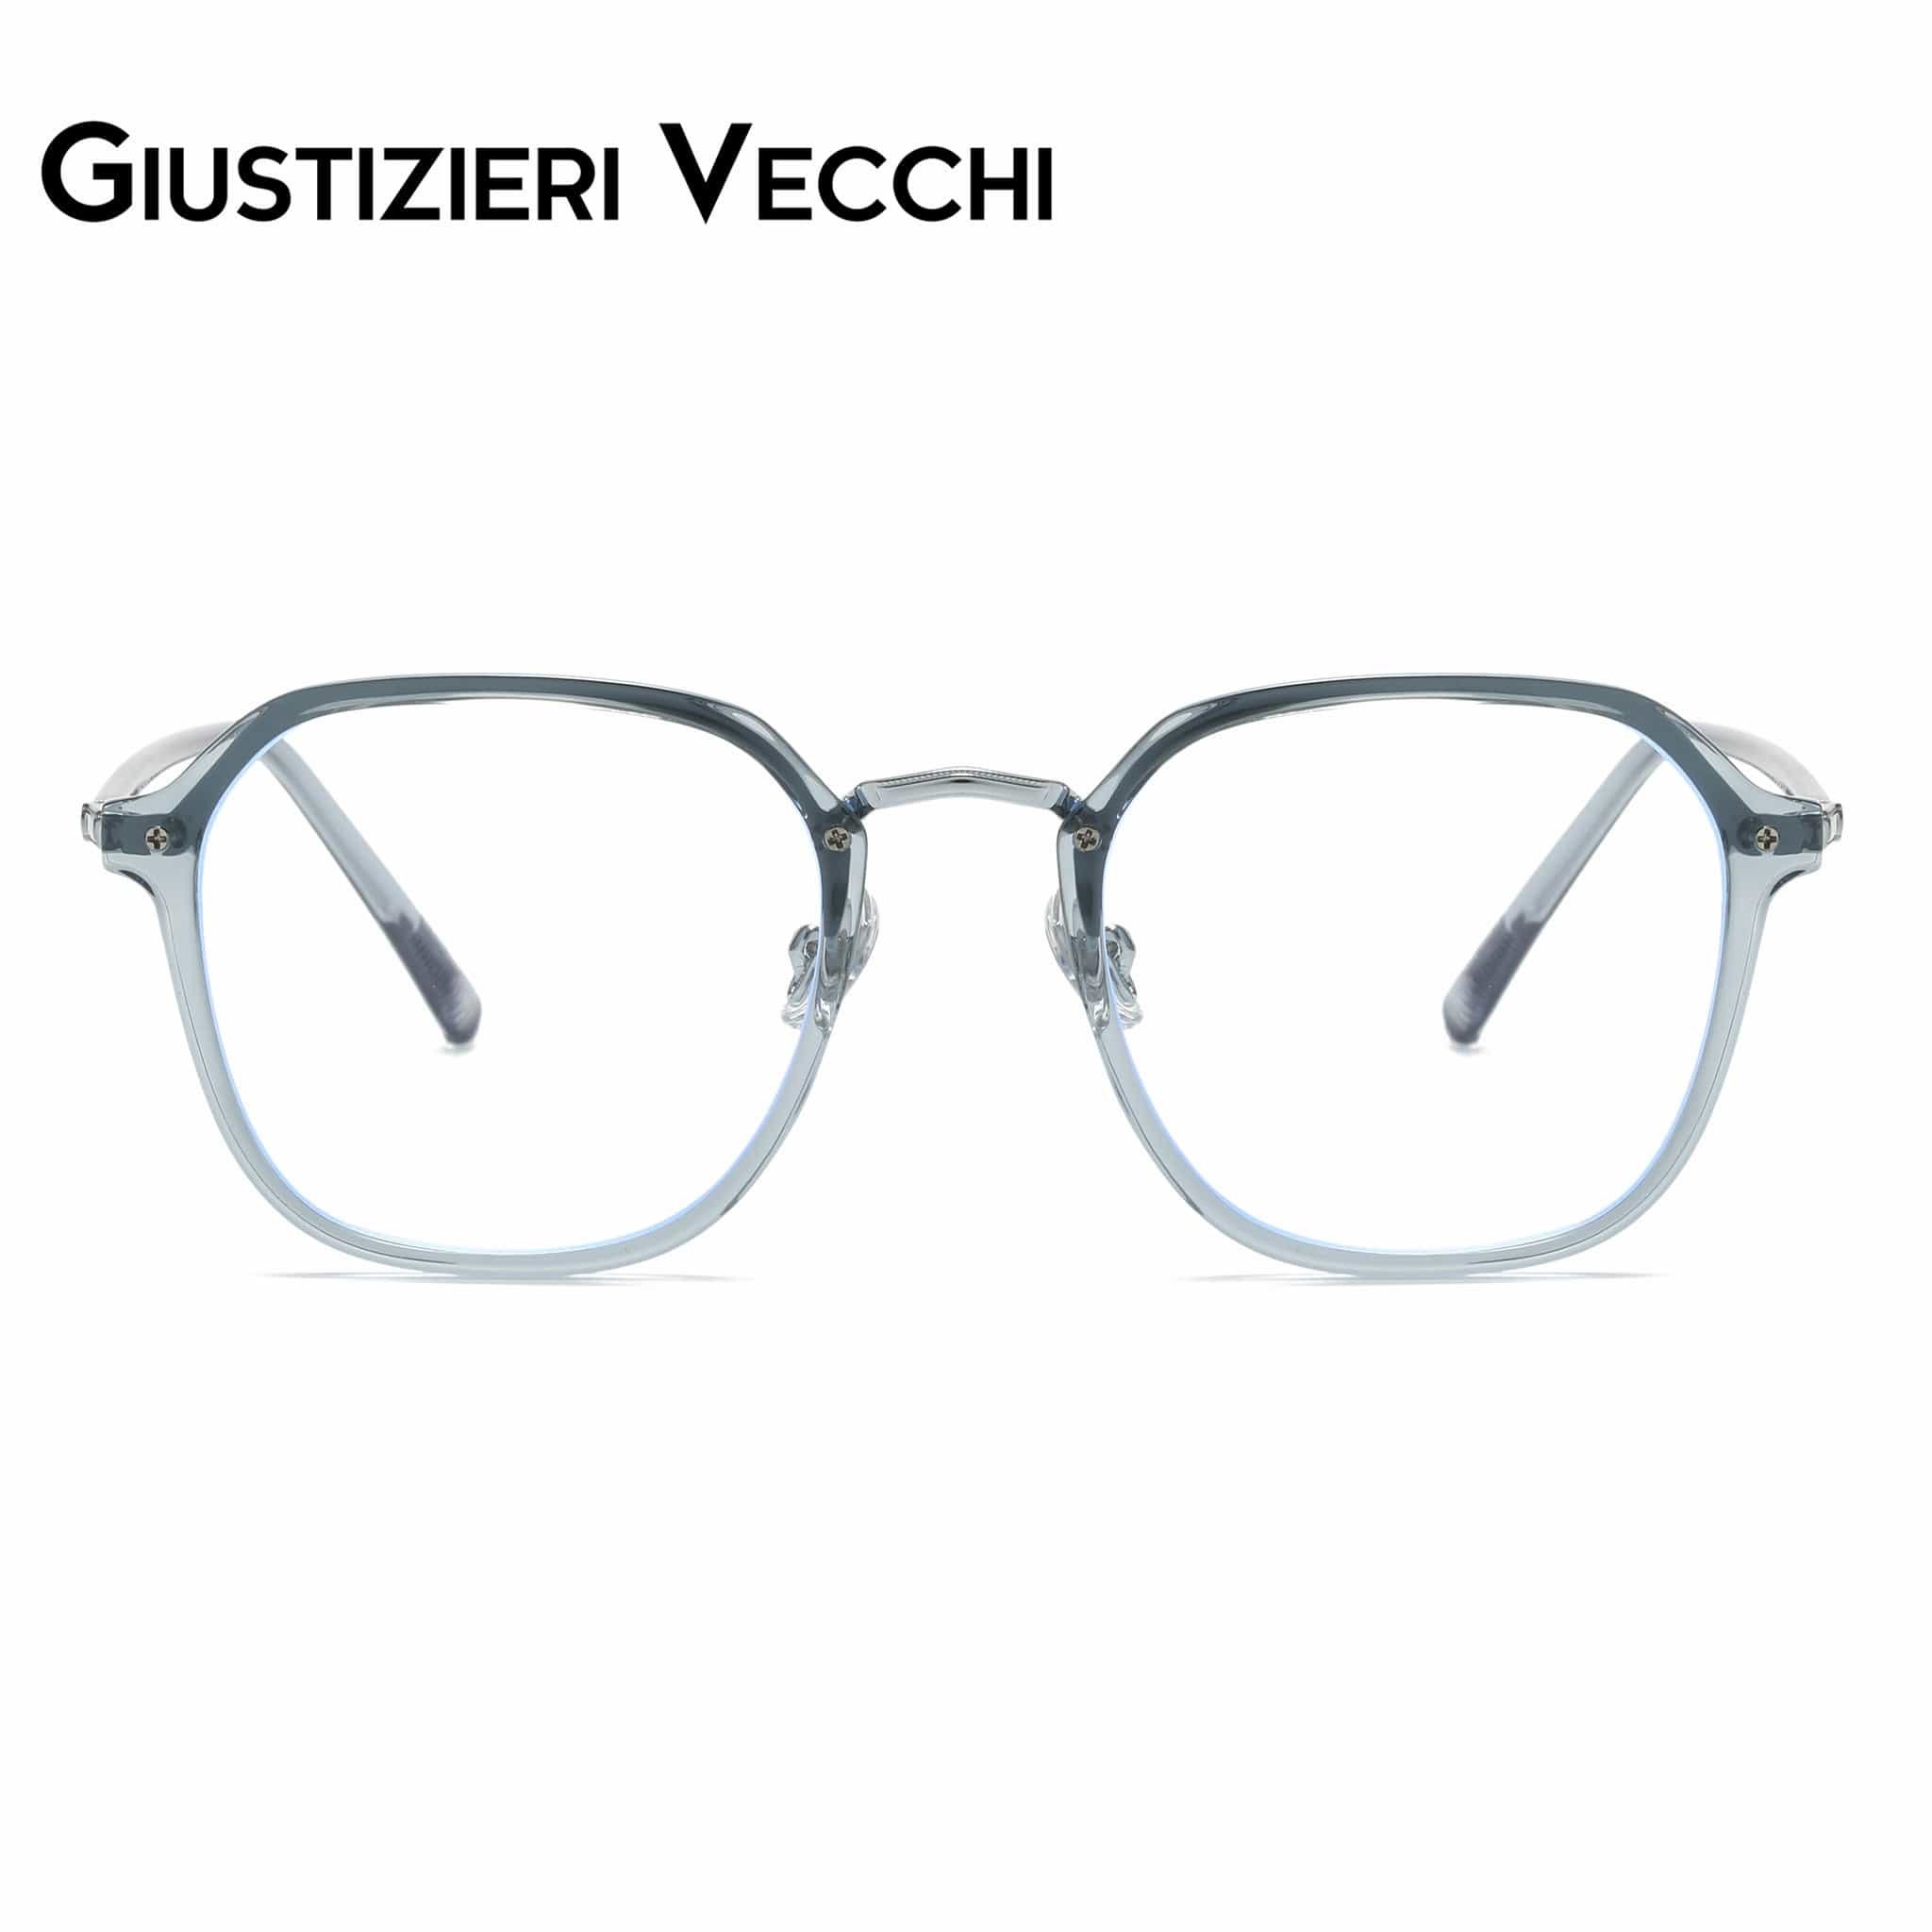 GIUSTIZIERI VECCHI Eyeglasses Small / Pacific Crystal ModaChic Duo